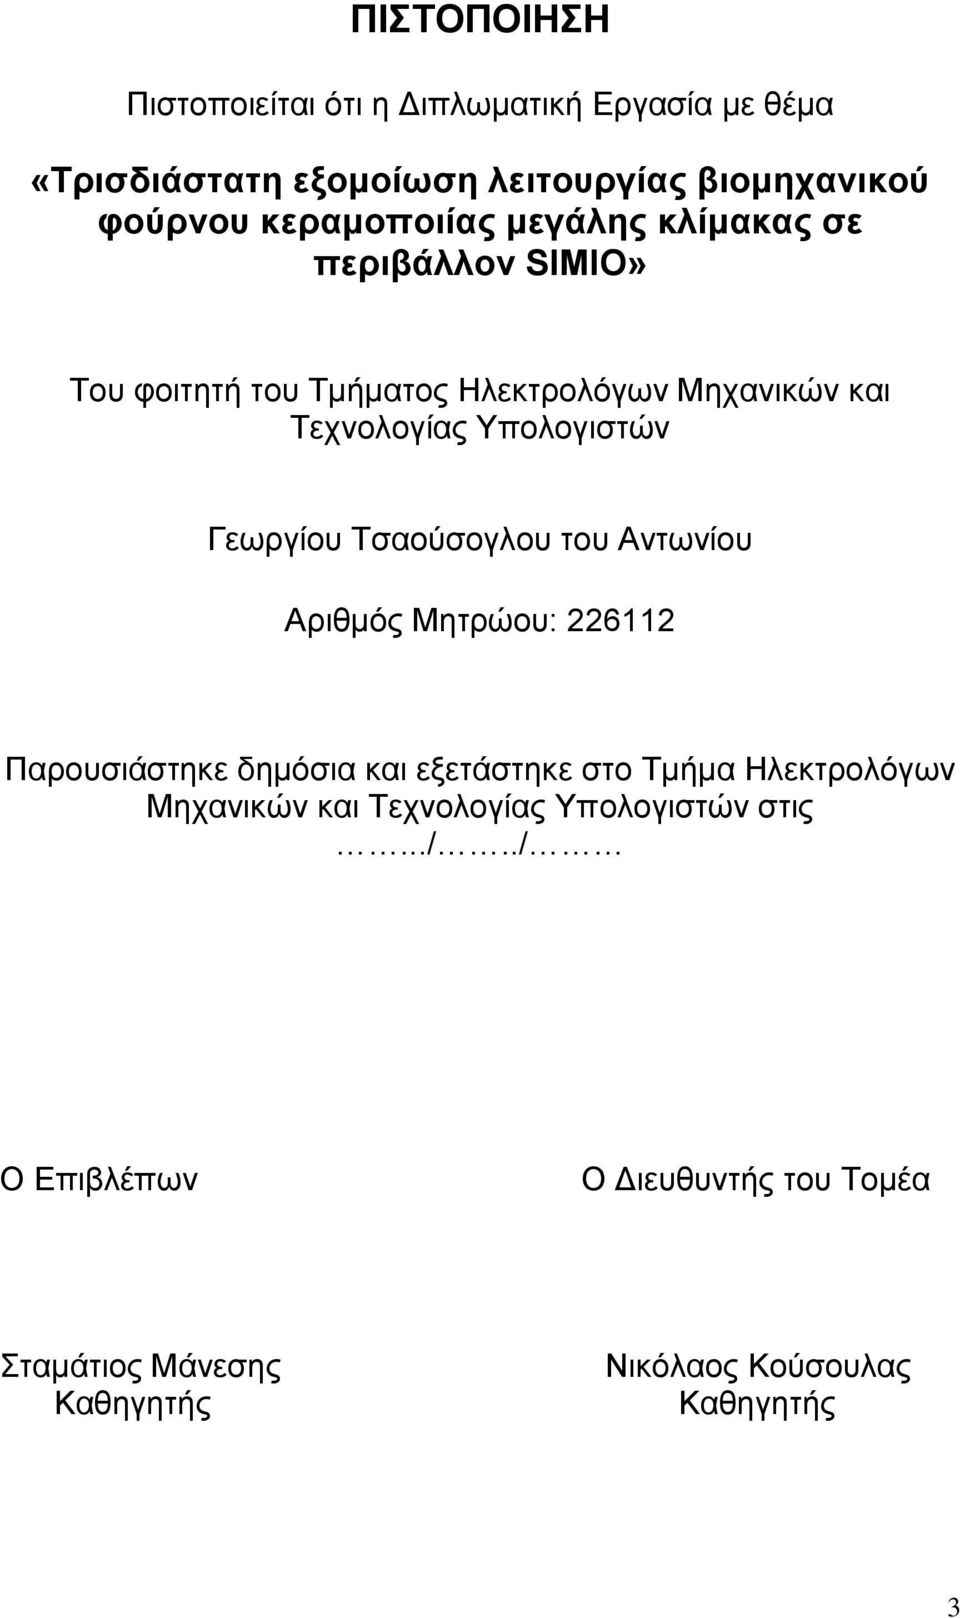 Γεωργίου Τσαούσογλου του Αντωνίου Αριθμός Μητρώου: 226112 Παρουσιάστηκε δημόσια και εξετάστηκε στο Τμήμα Ηλεκτρολόγων